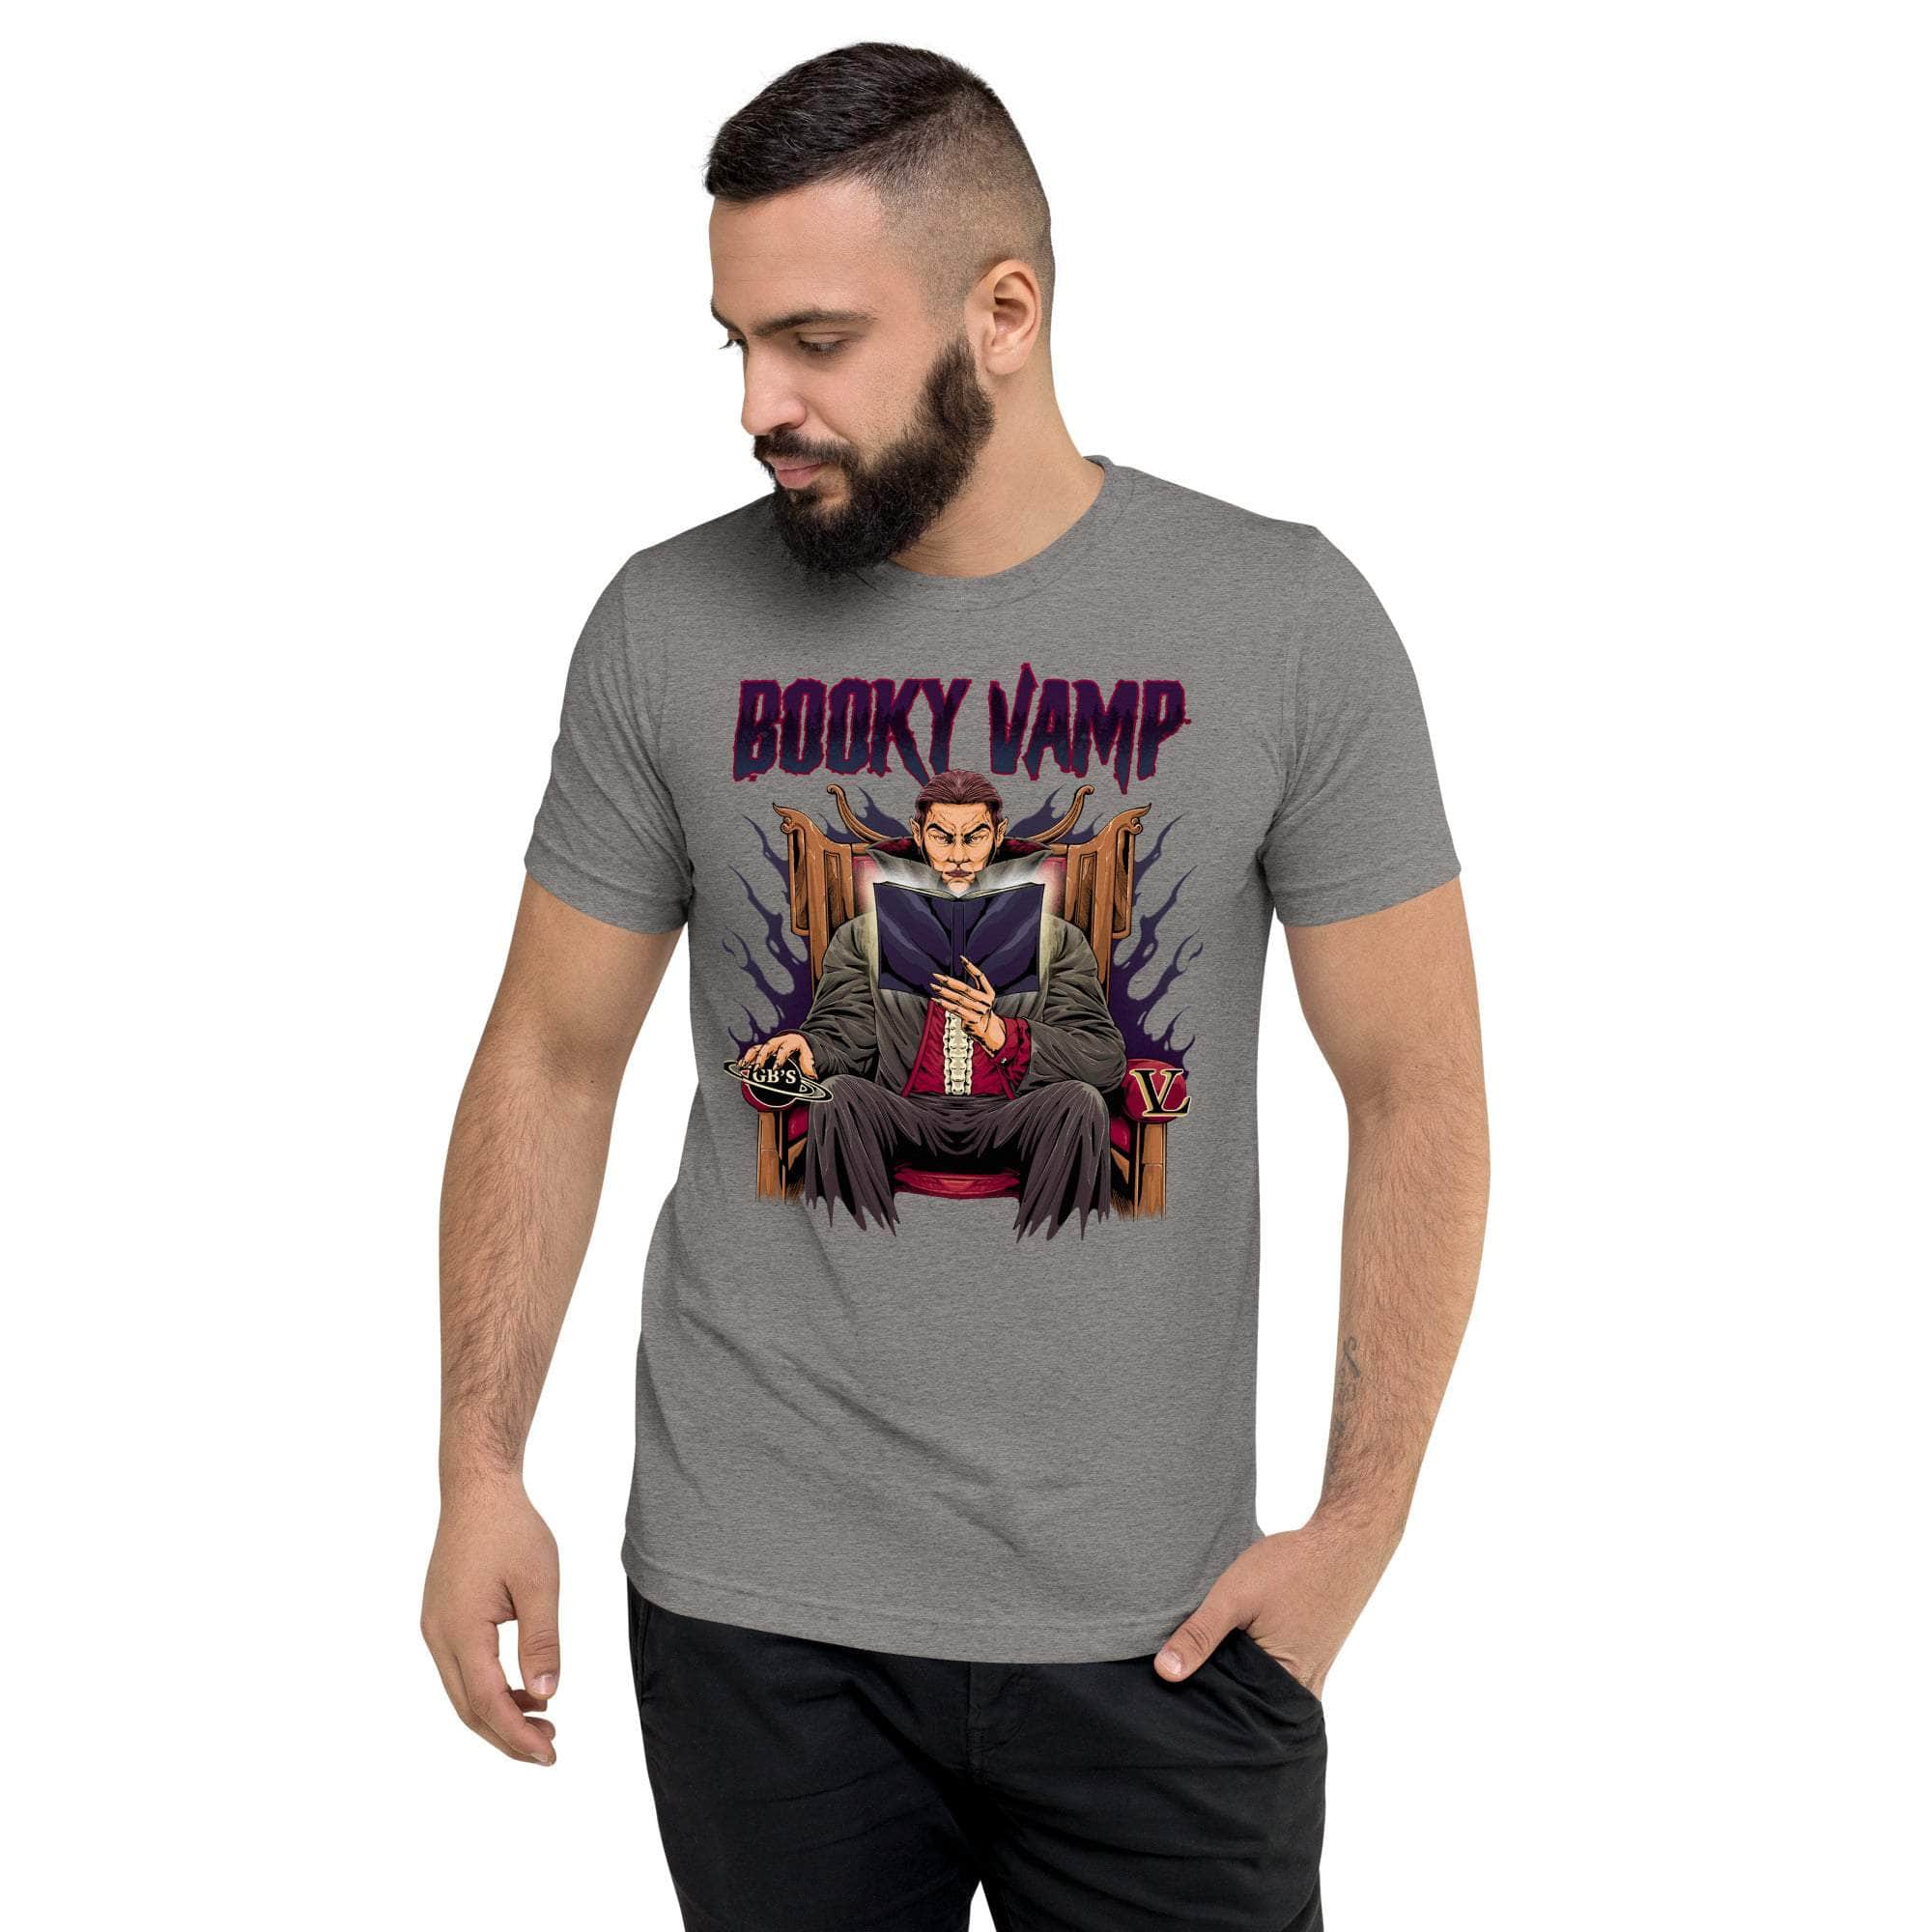 GBNY Grey Triblend / XS Vamp Life X GBNY "Booky Vamp" T-shirt - Men's 2381652_6536